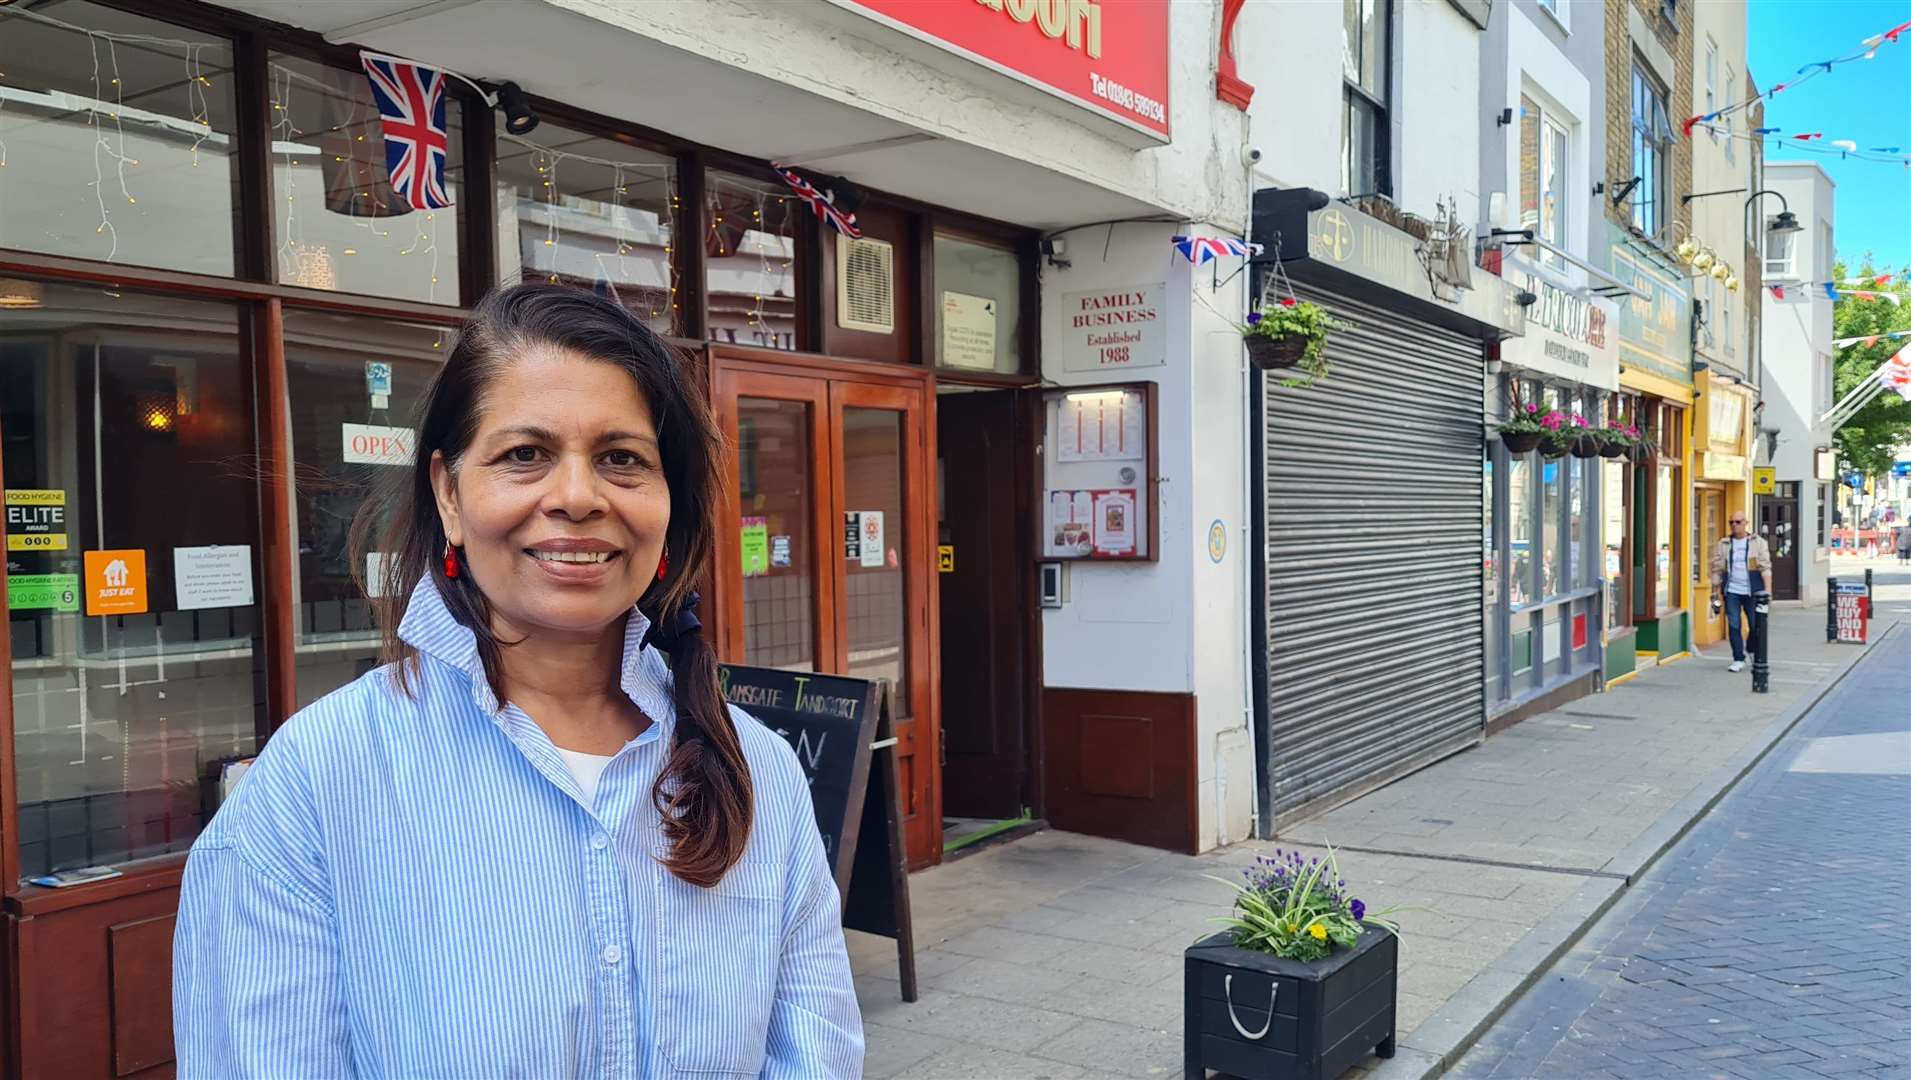 Mayor of Ramsgate and Indian restaurant owner Raushan Ara